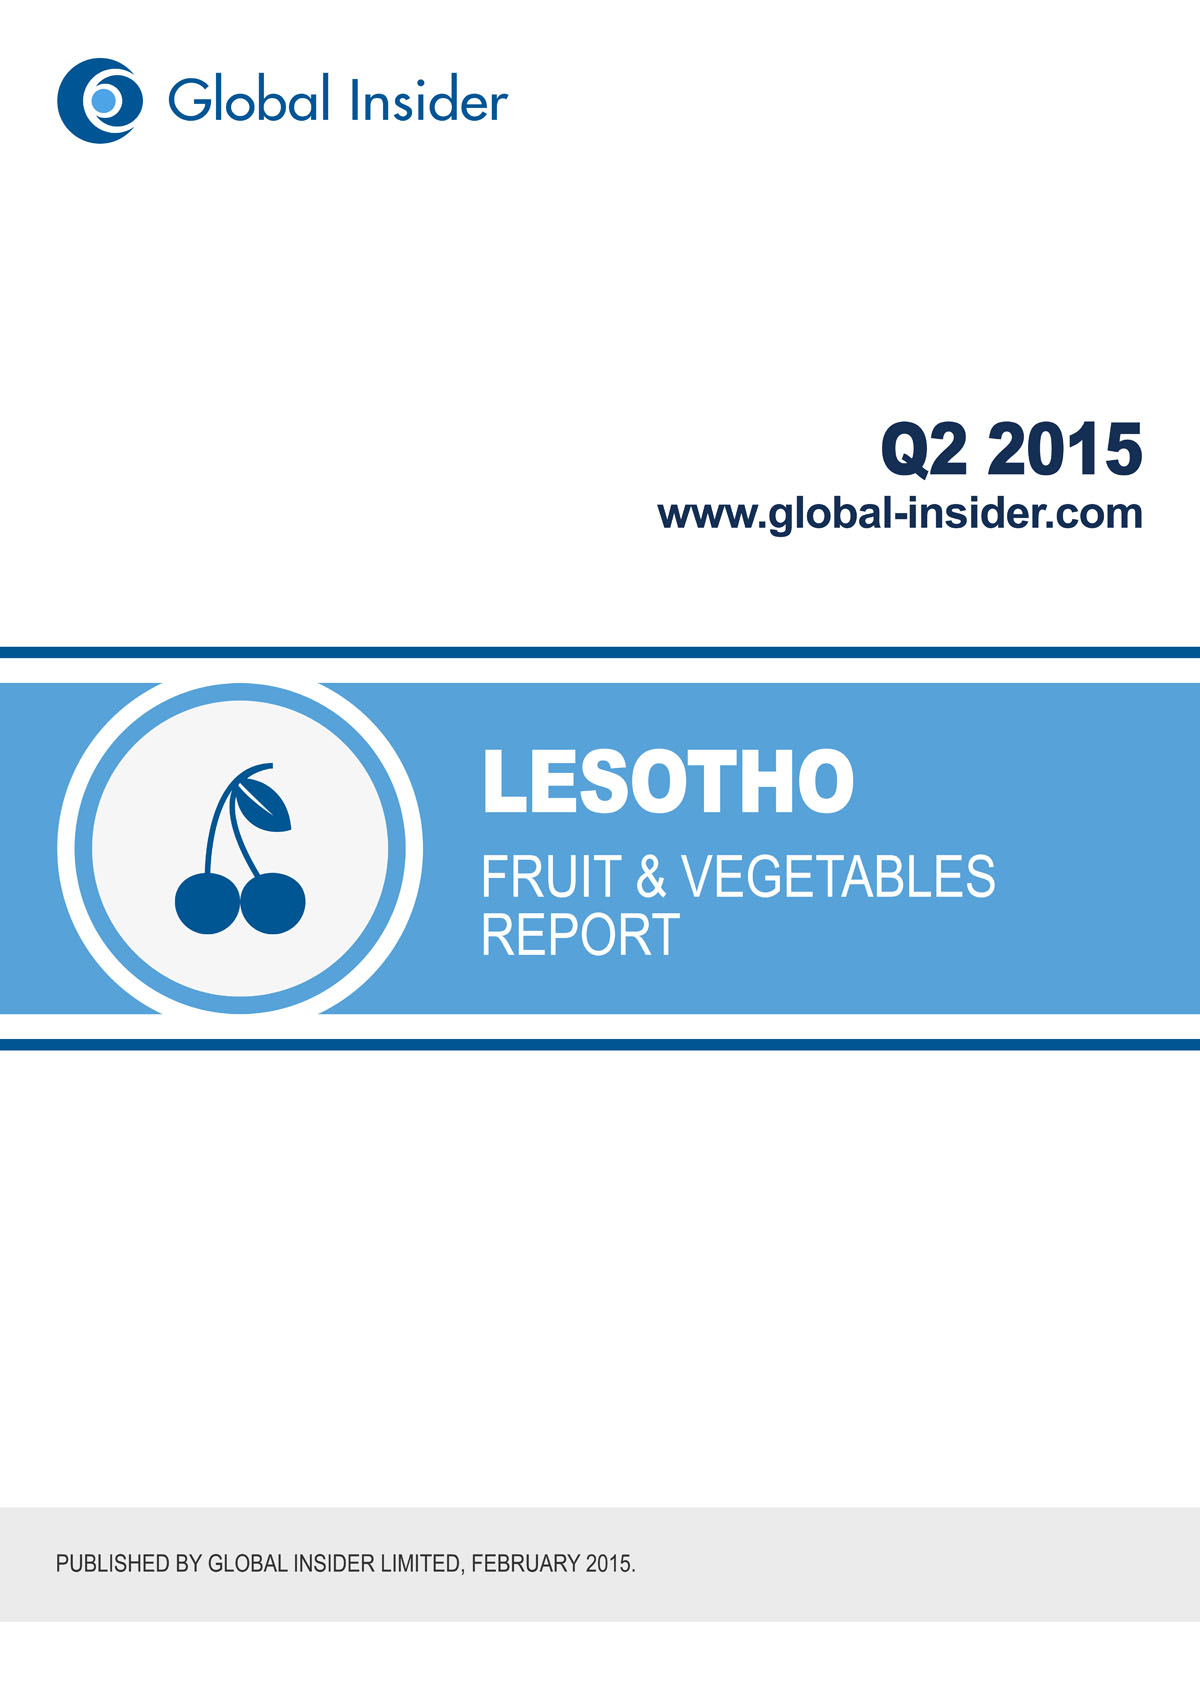 Lesotho Fruit & Vegetables Report